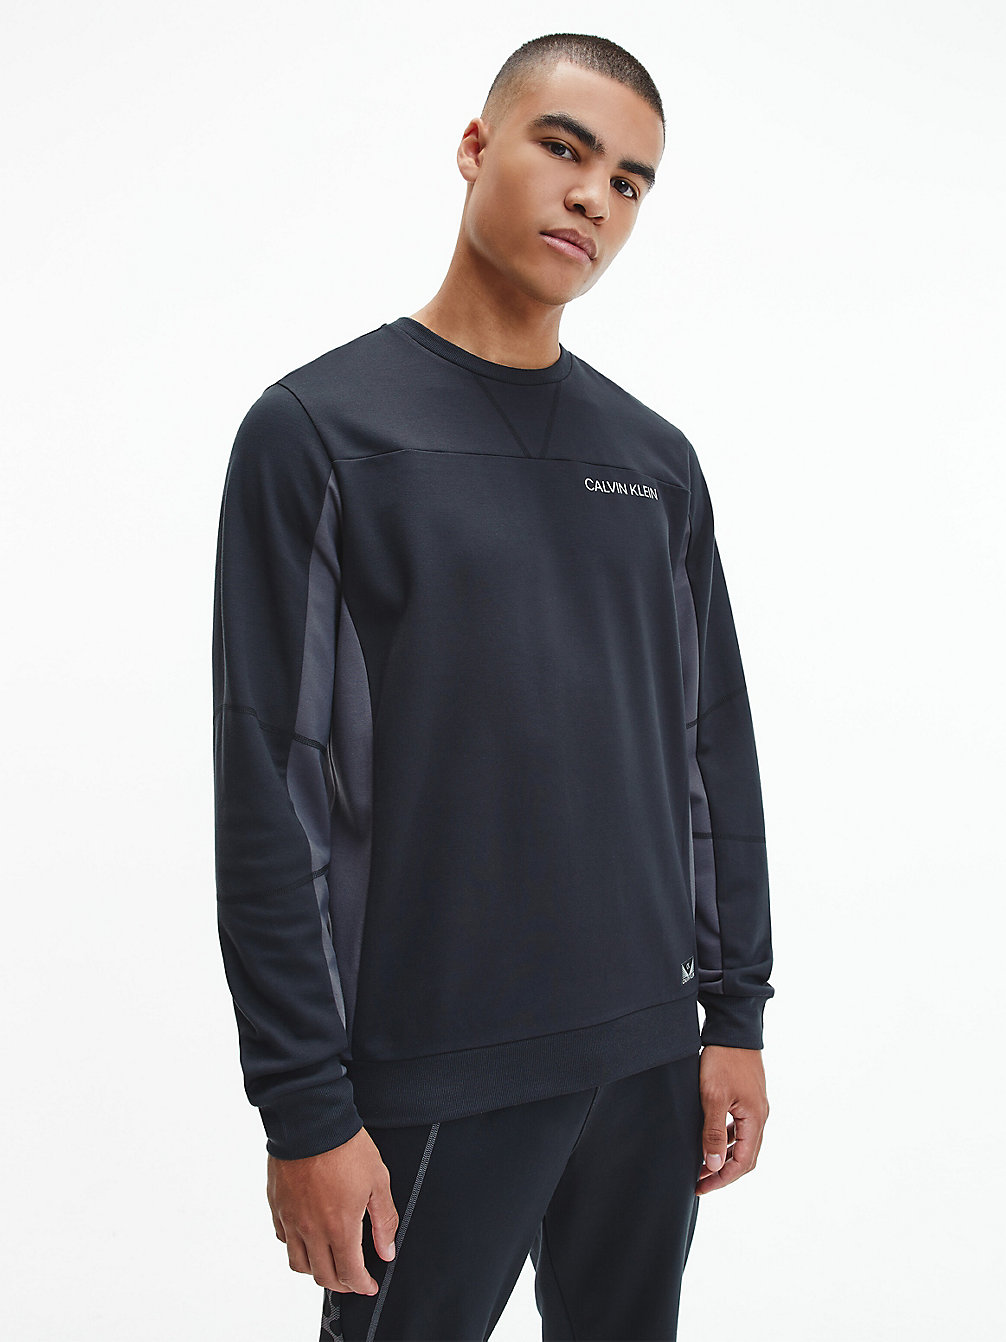 CK BLACK/ PERISCOPE/ STONE GREY Logo-Sweatshirt Aus Comfort-Stretch undefined Herren Calvin Klein